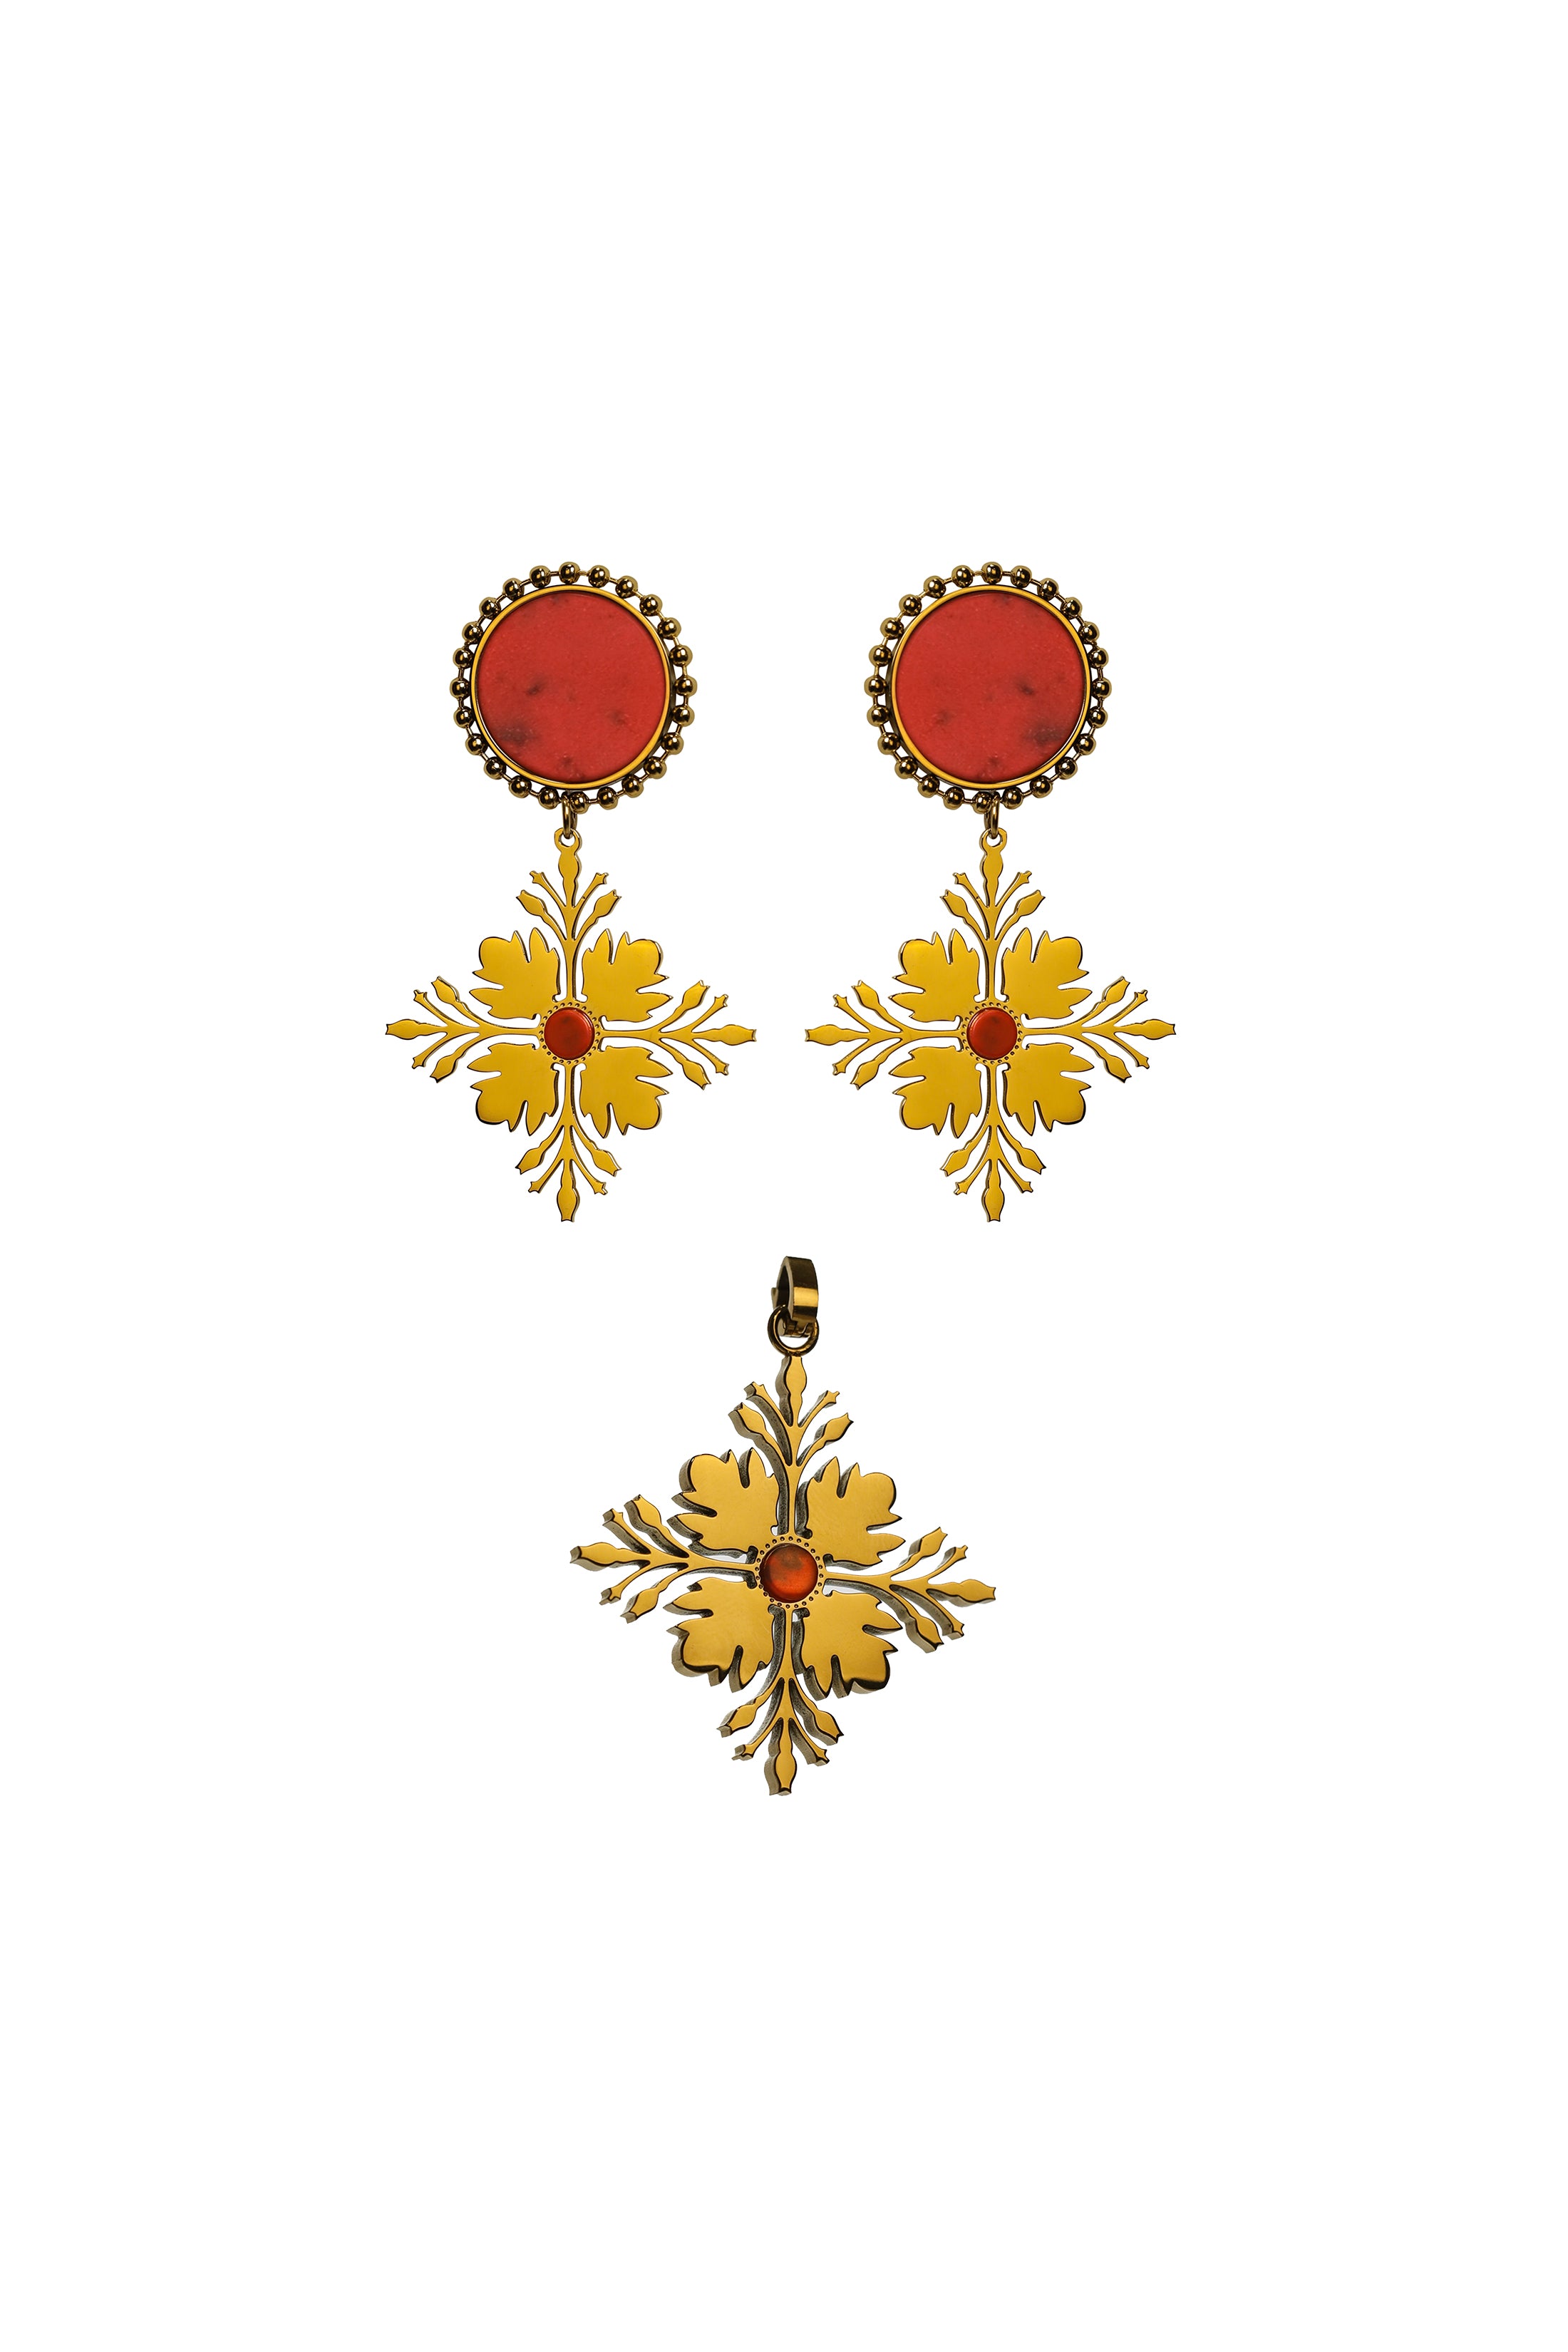 Maltese Tile Pattern Flame Stone Pendant &amp; Earring Gift Set